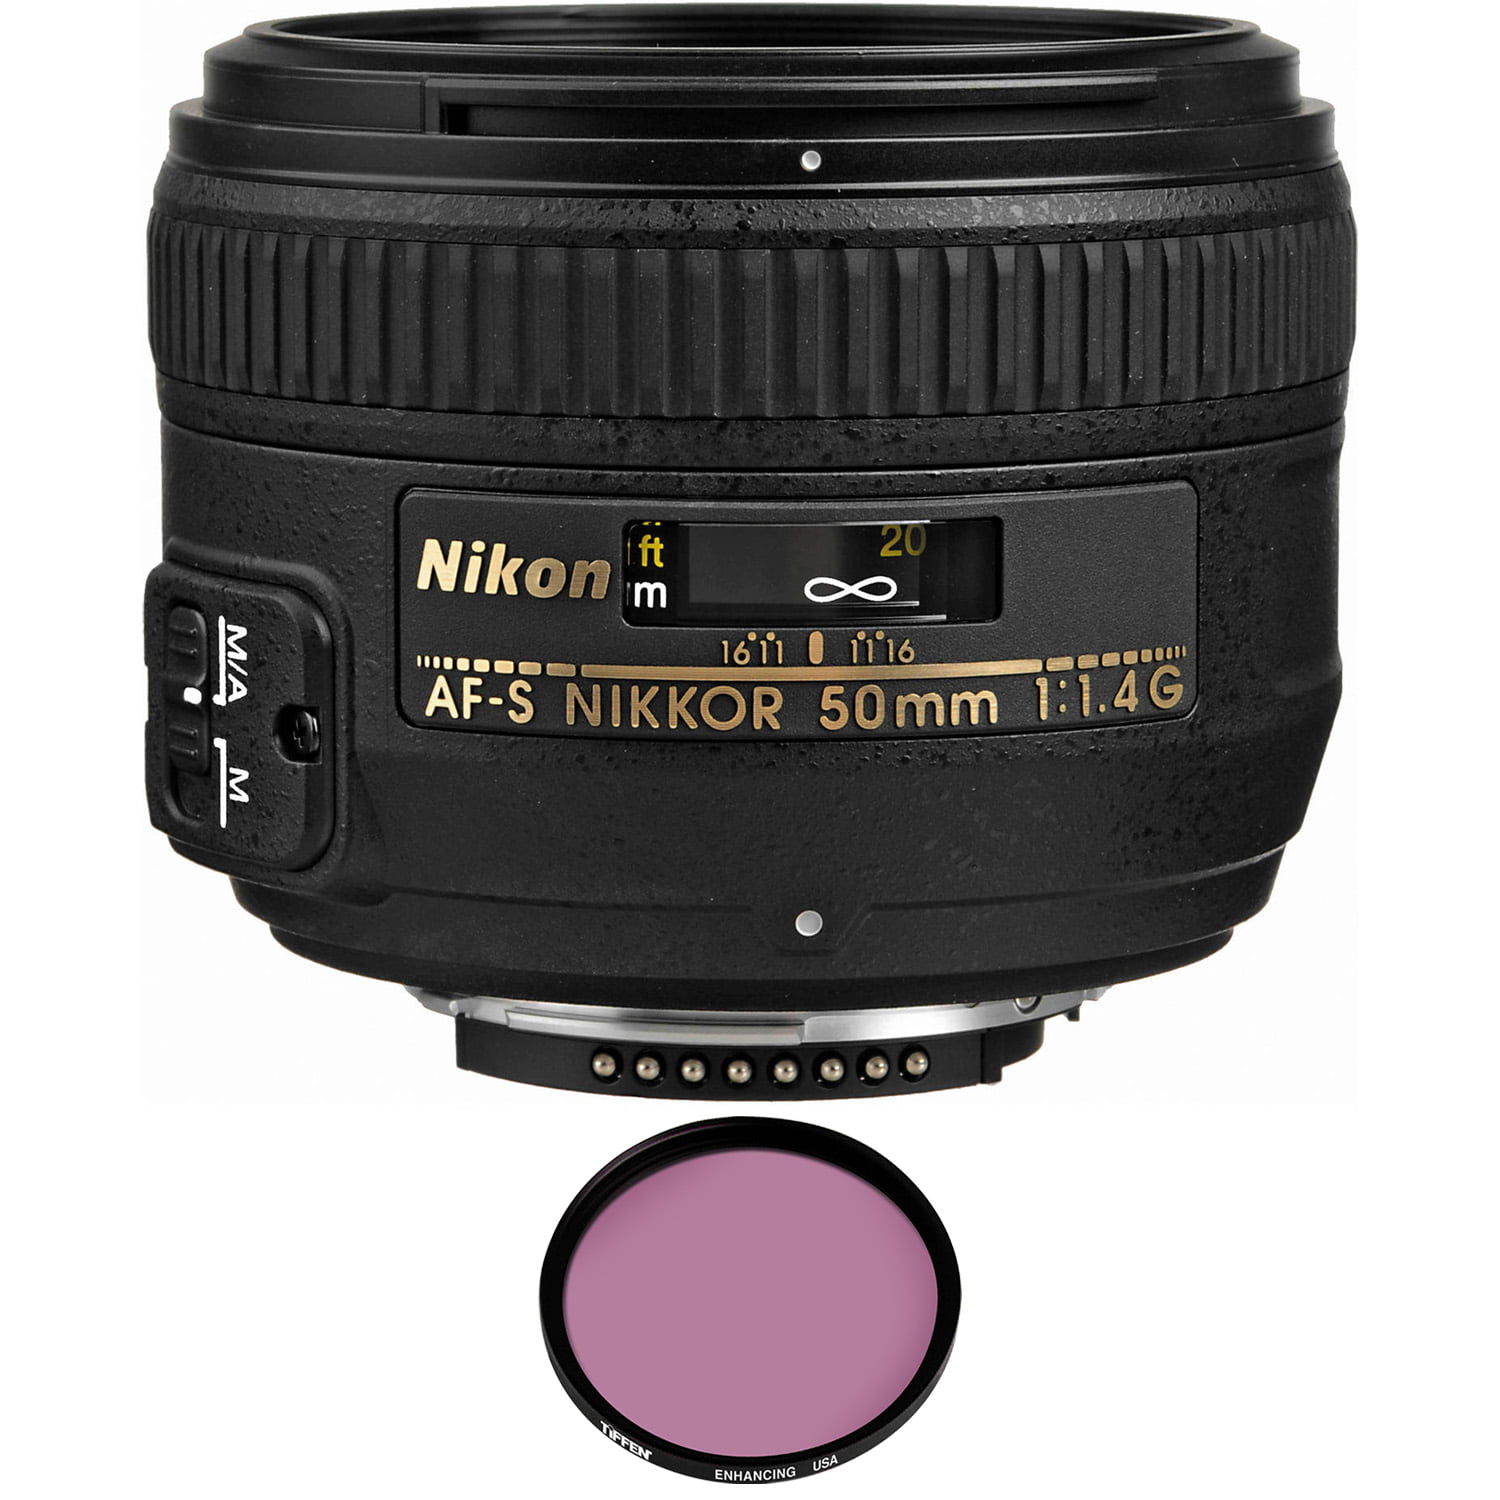 Nikon AF-S NIKKOR 50mm f/1.4G Lens with Pro Filter (Used